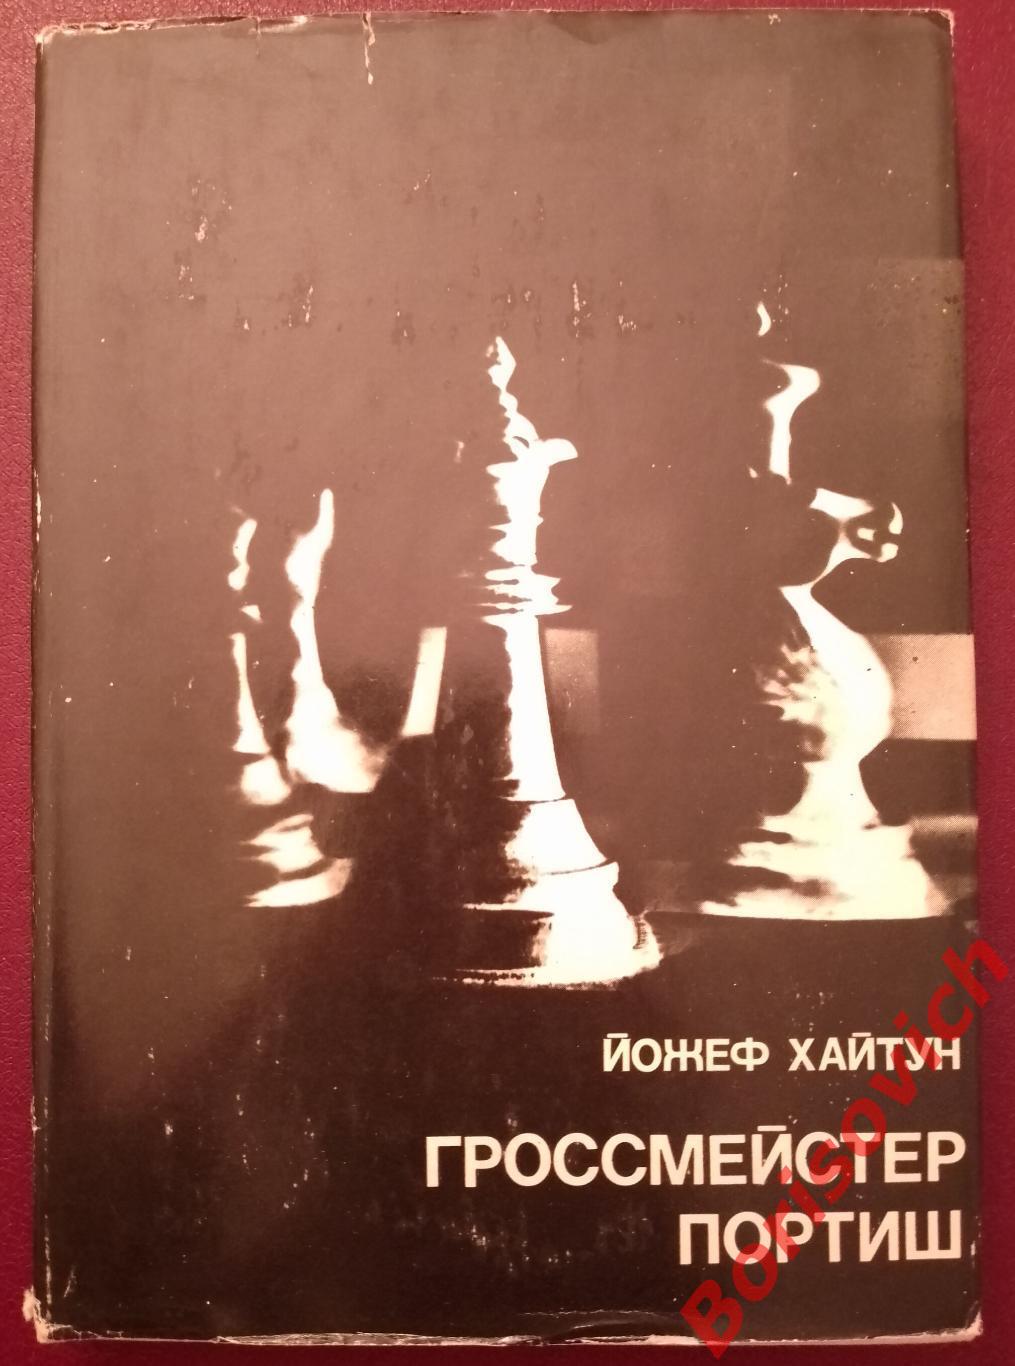 Гроссмейстер ПОРТИШ ФиС 1977 г 192 страницы